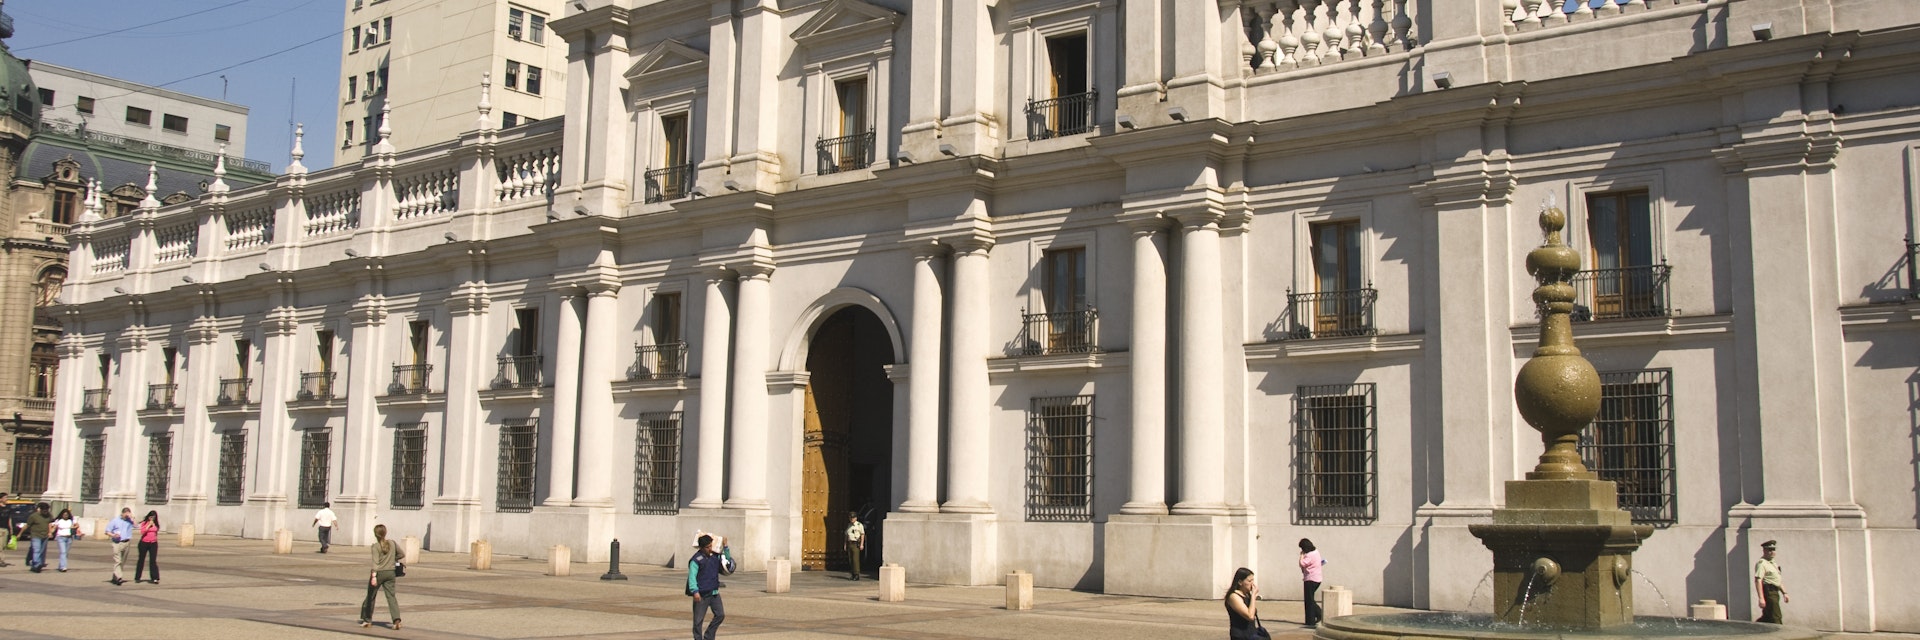 Palacio de la Moneda, Presidential Palace.